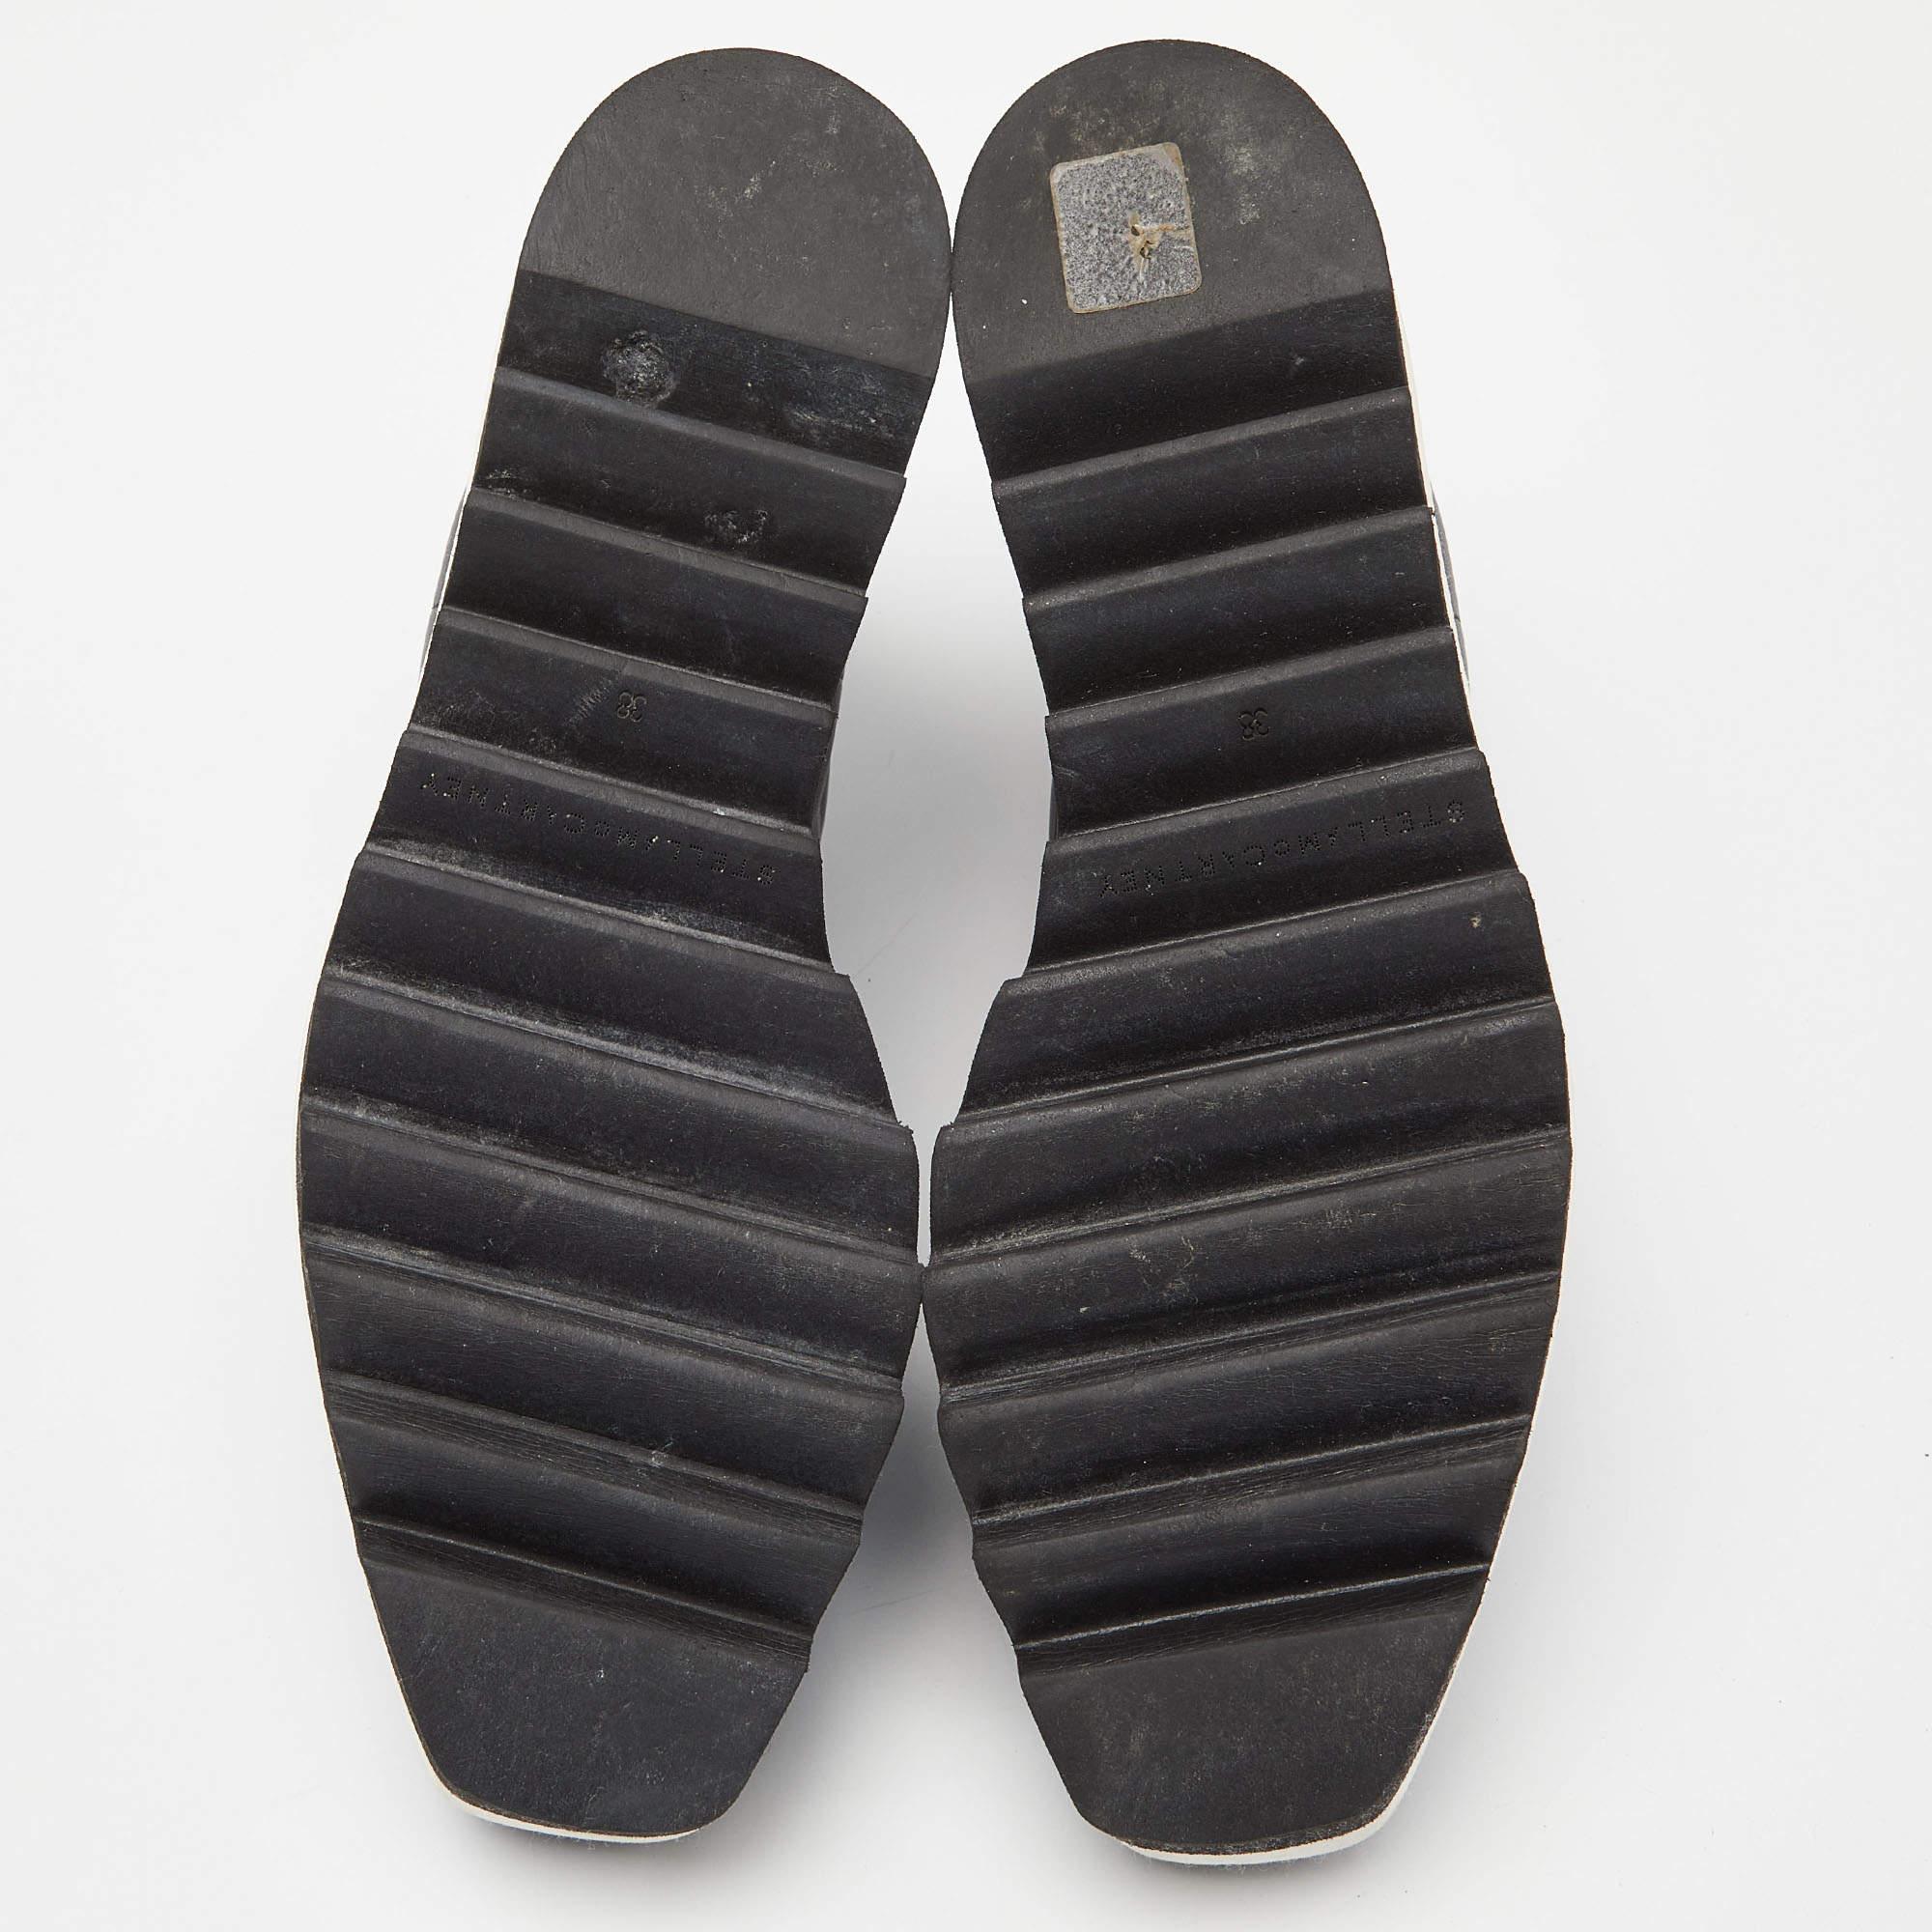 Baskets compensées Stella McCartney noires en faux cuir, taille 38 4